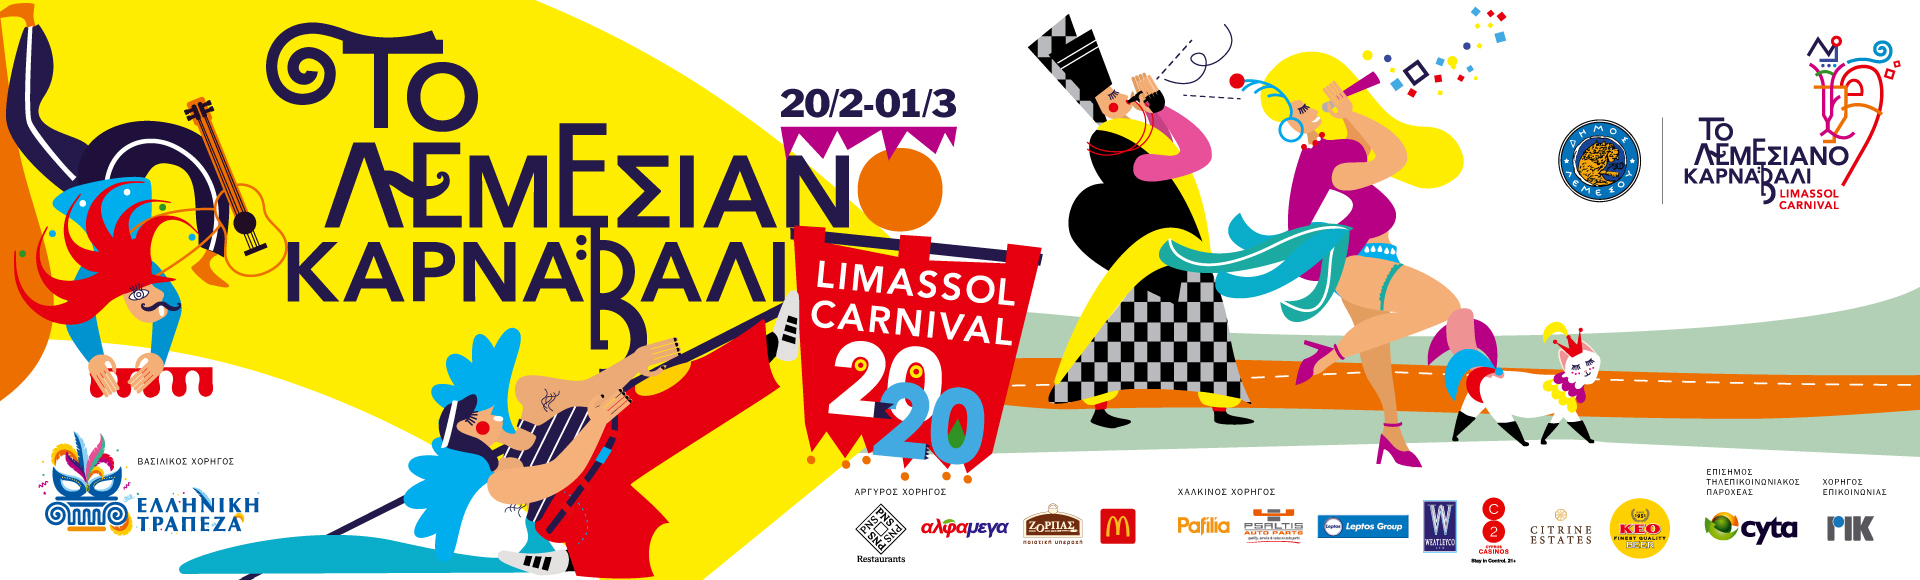 Программа грандиозного карнавала 2020 в Лимассоле: фото 2